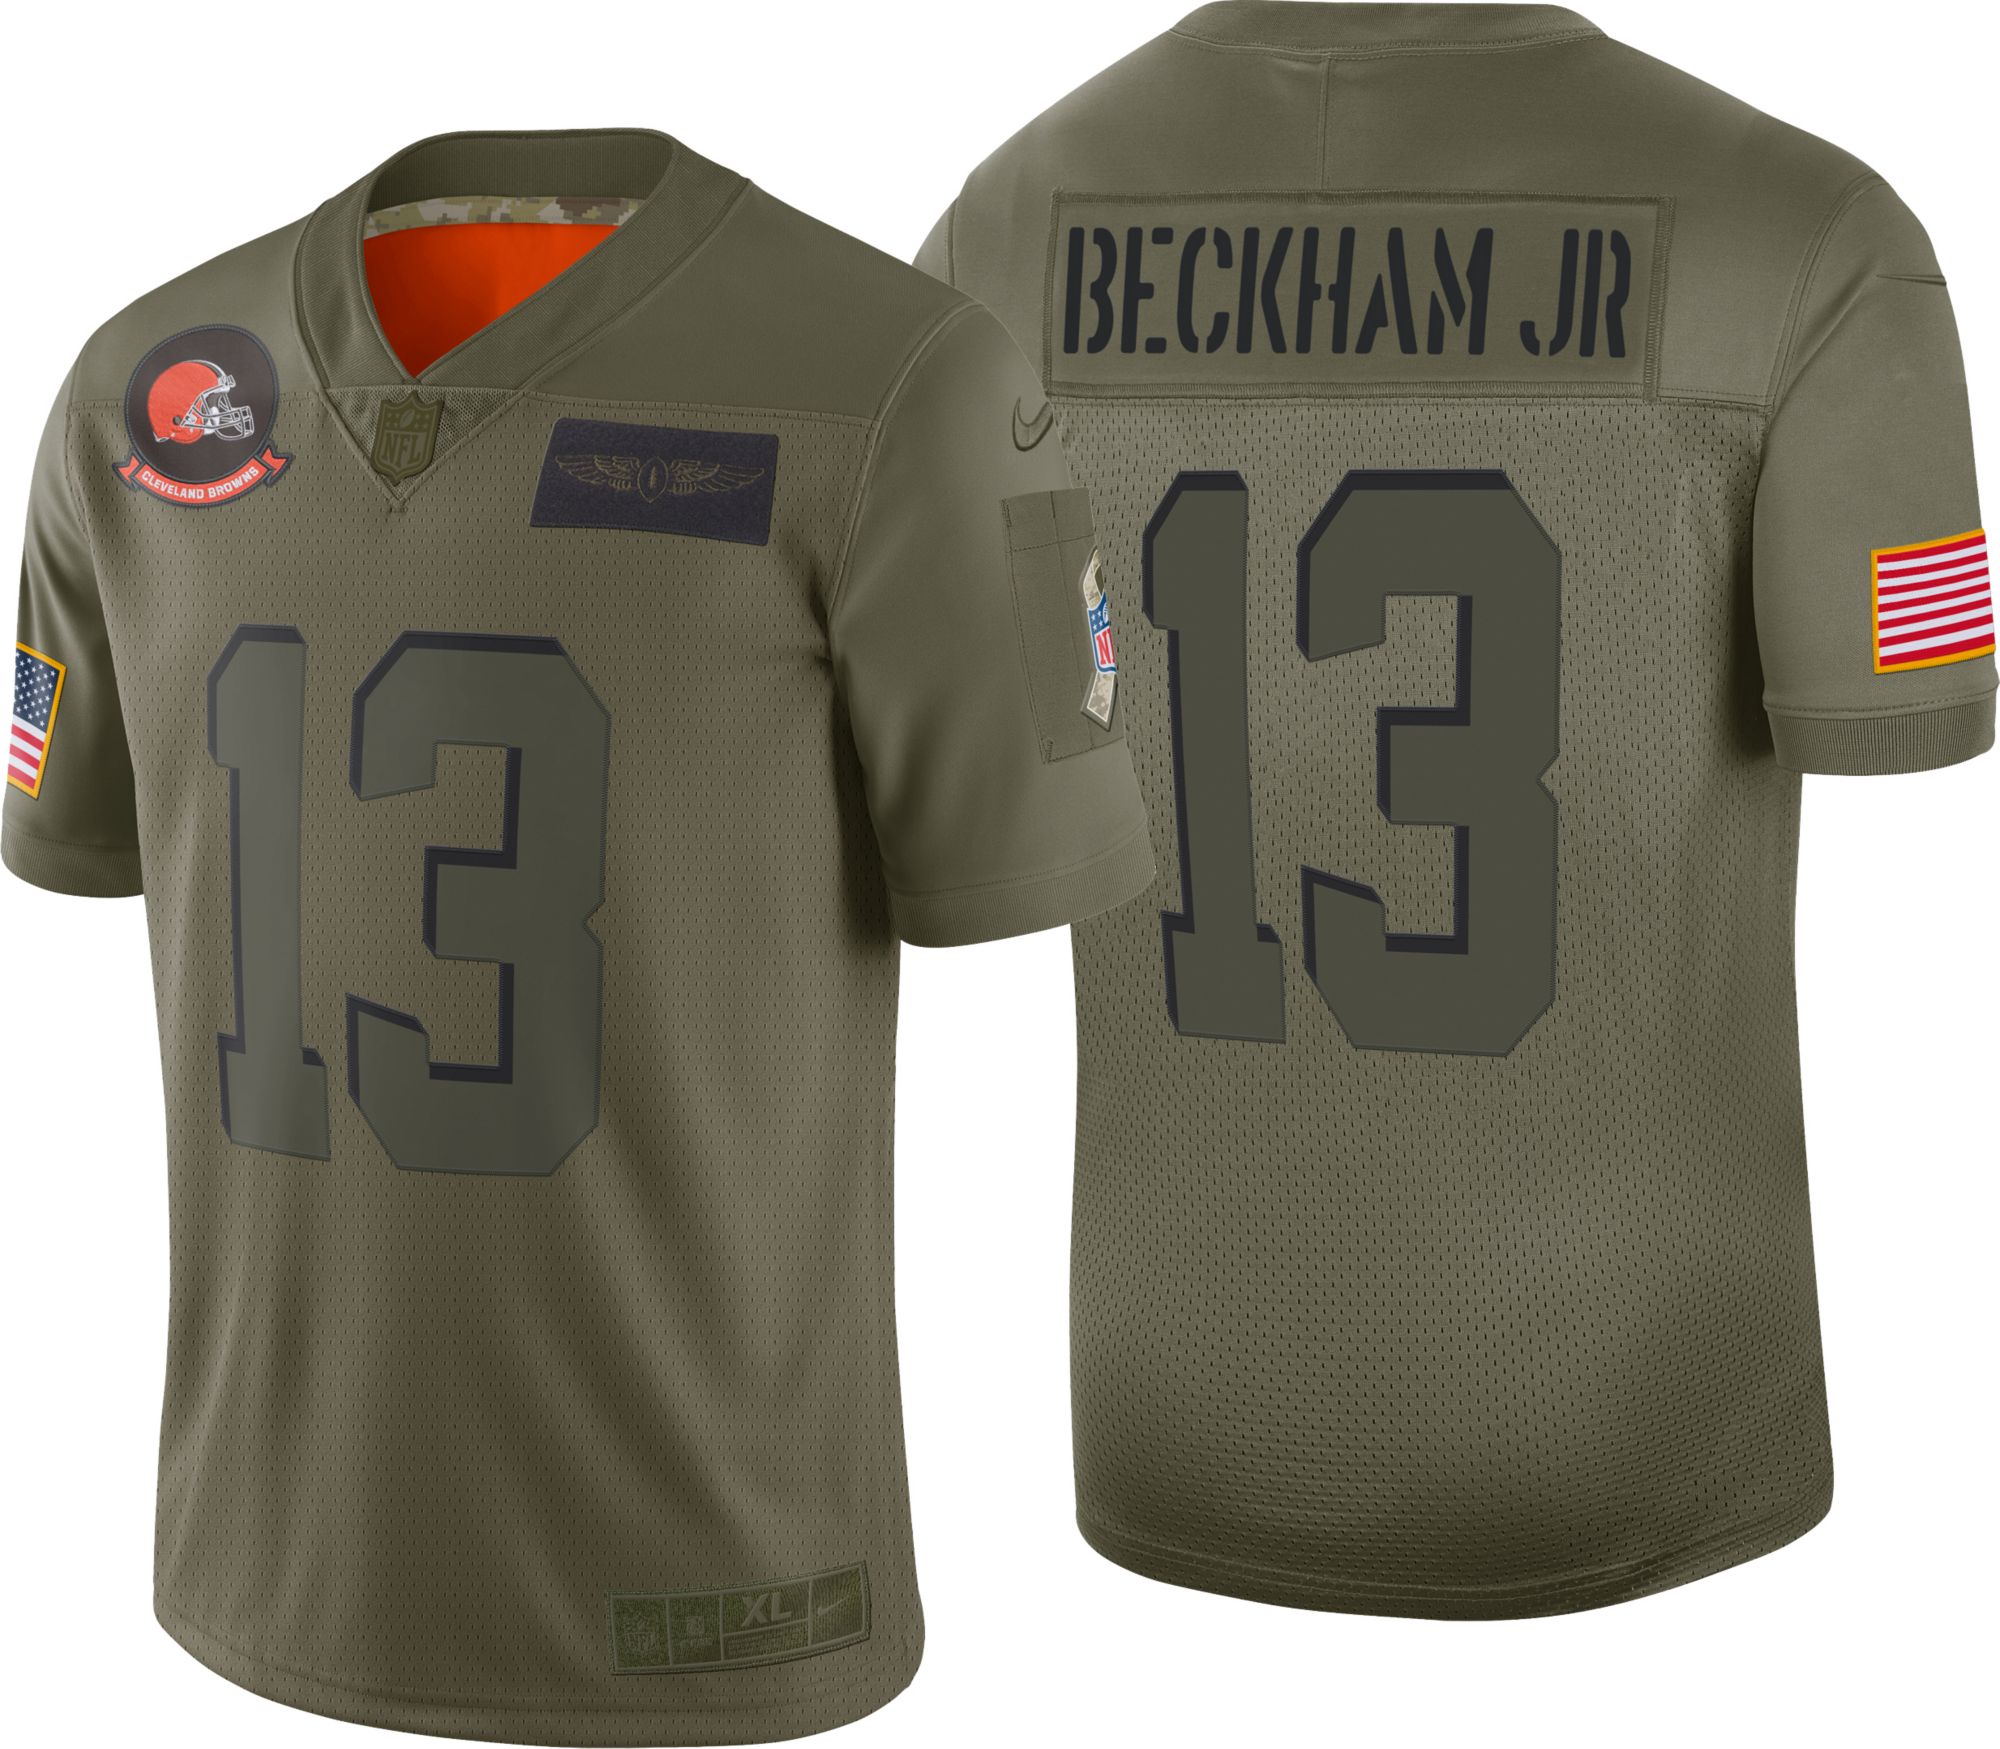 beckham jr 13 jersey